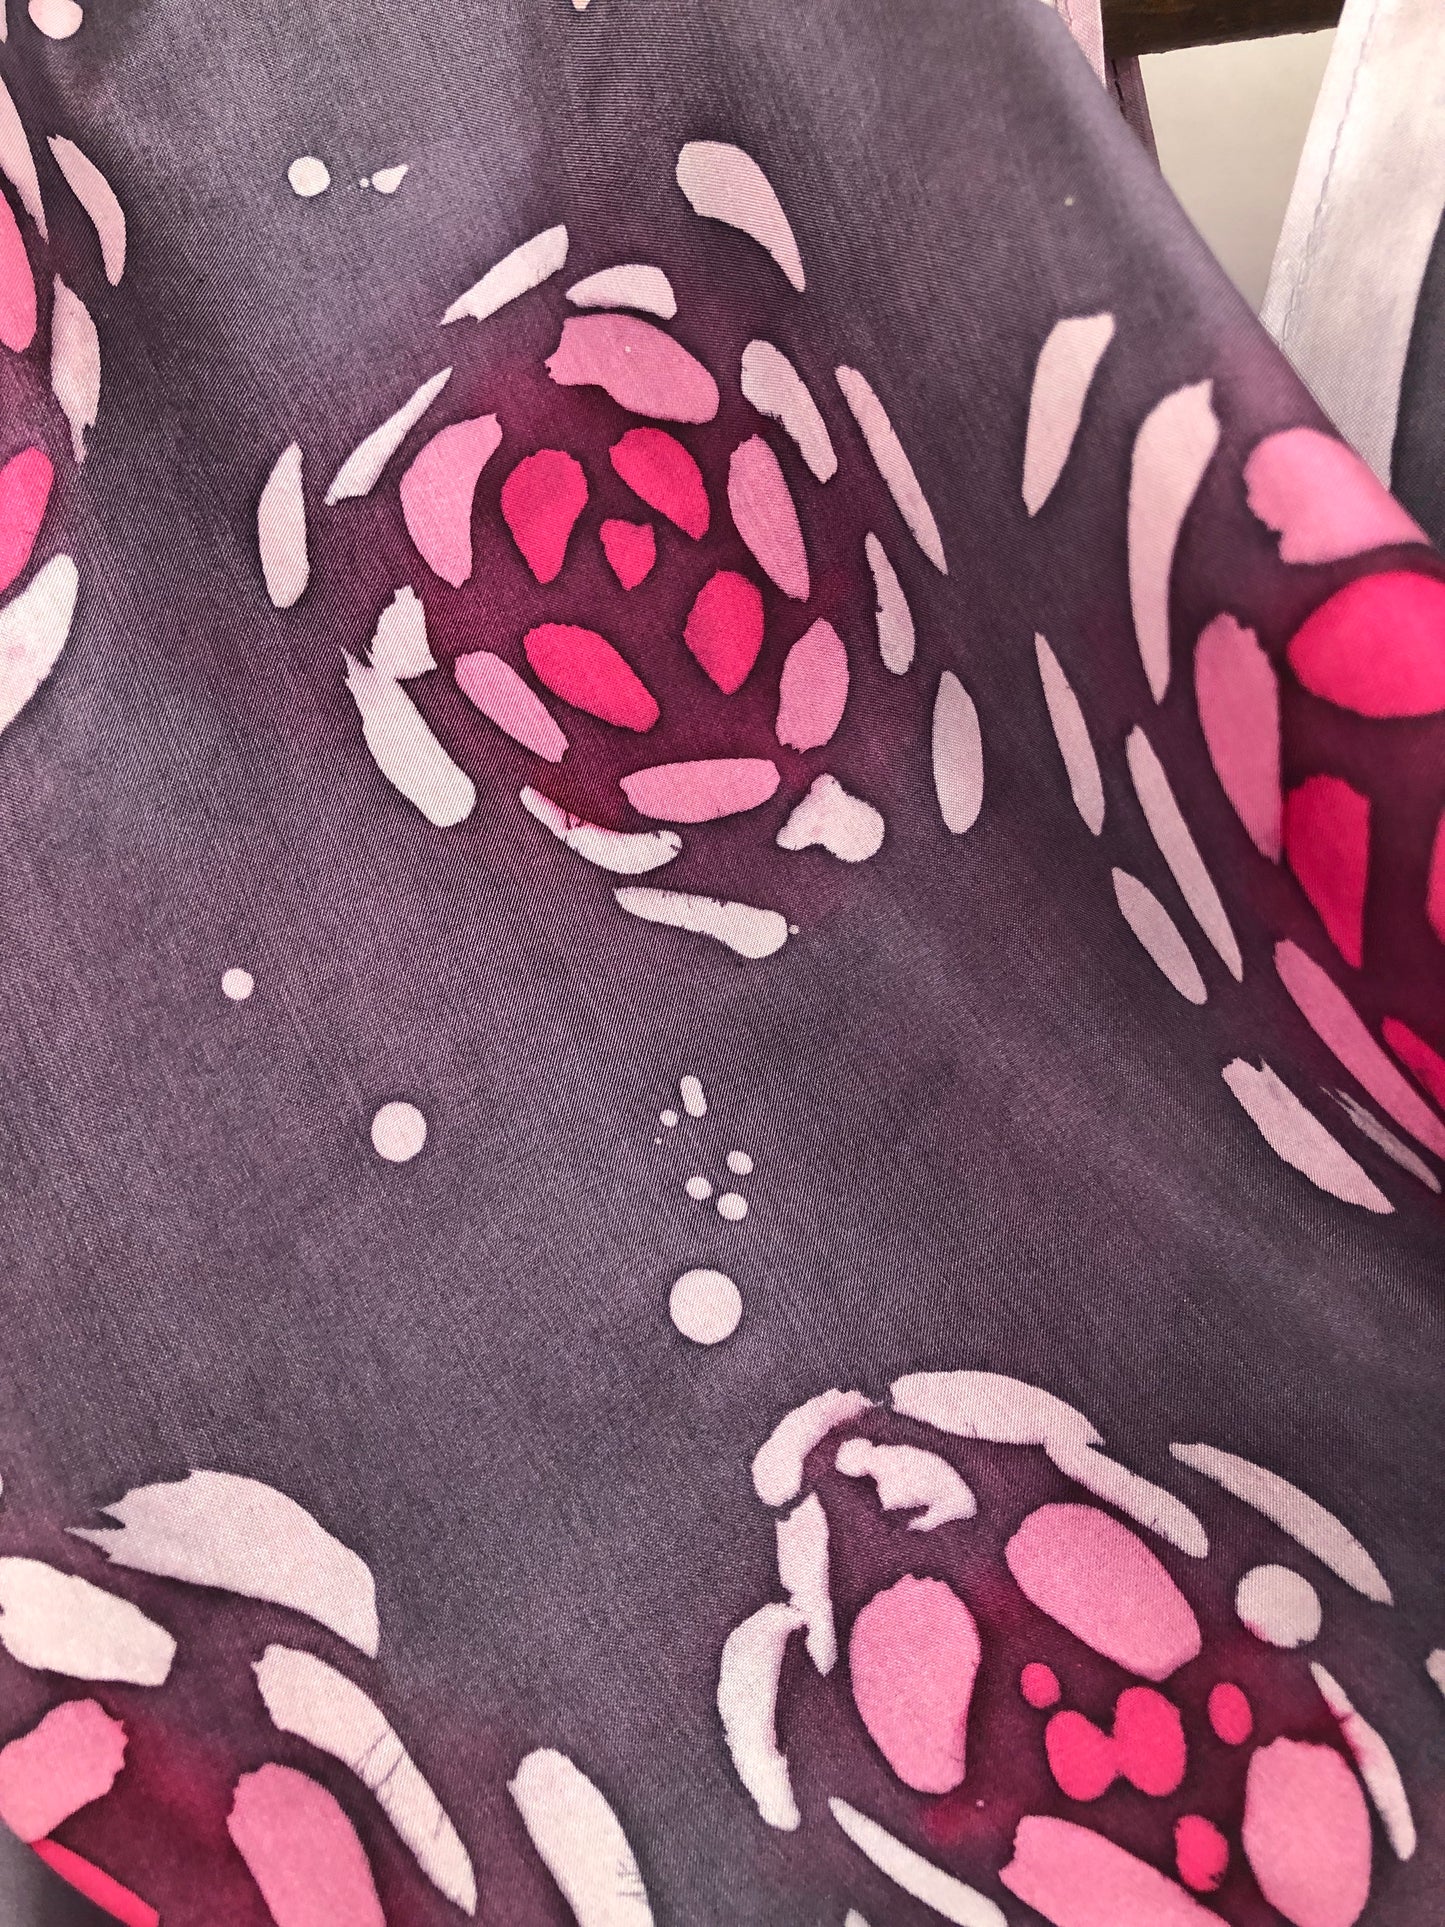 “Dusky Roses V2" - Hand-dyed Silk Scarf - $125